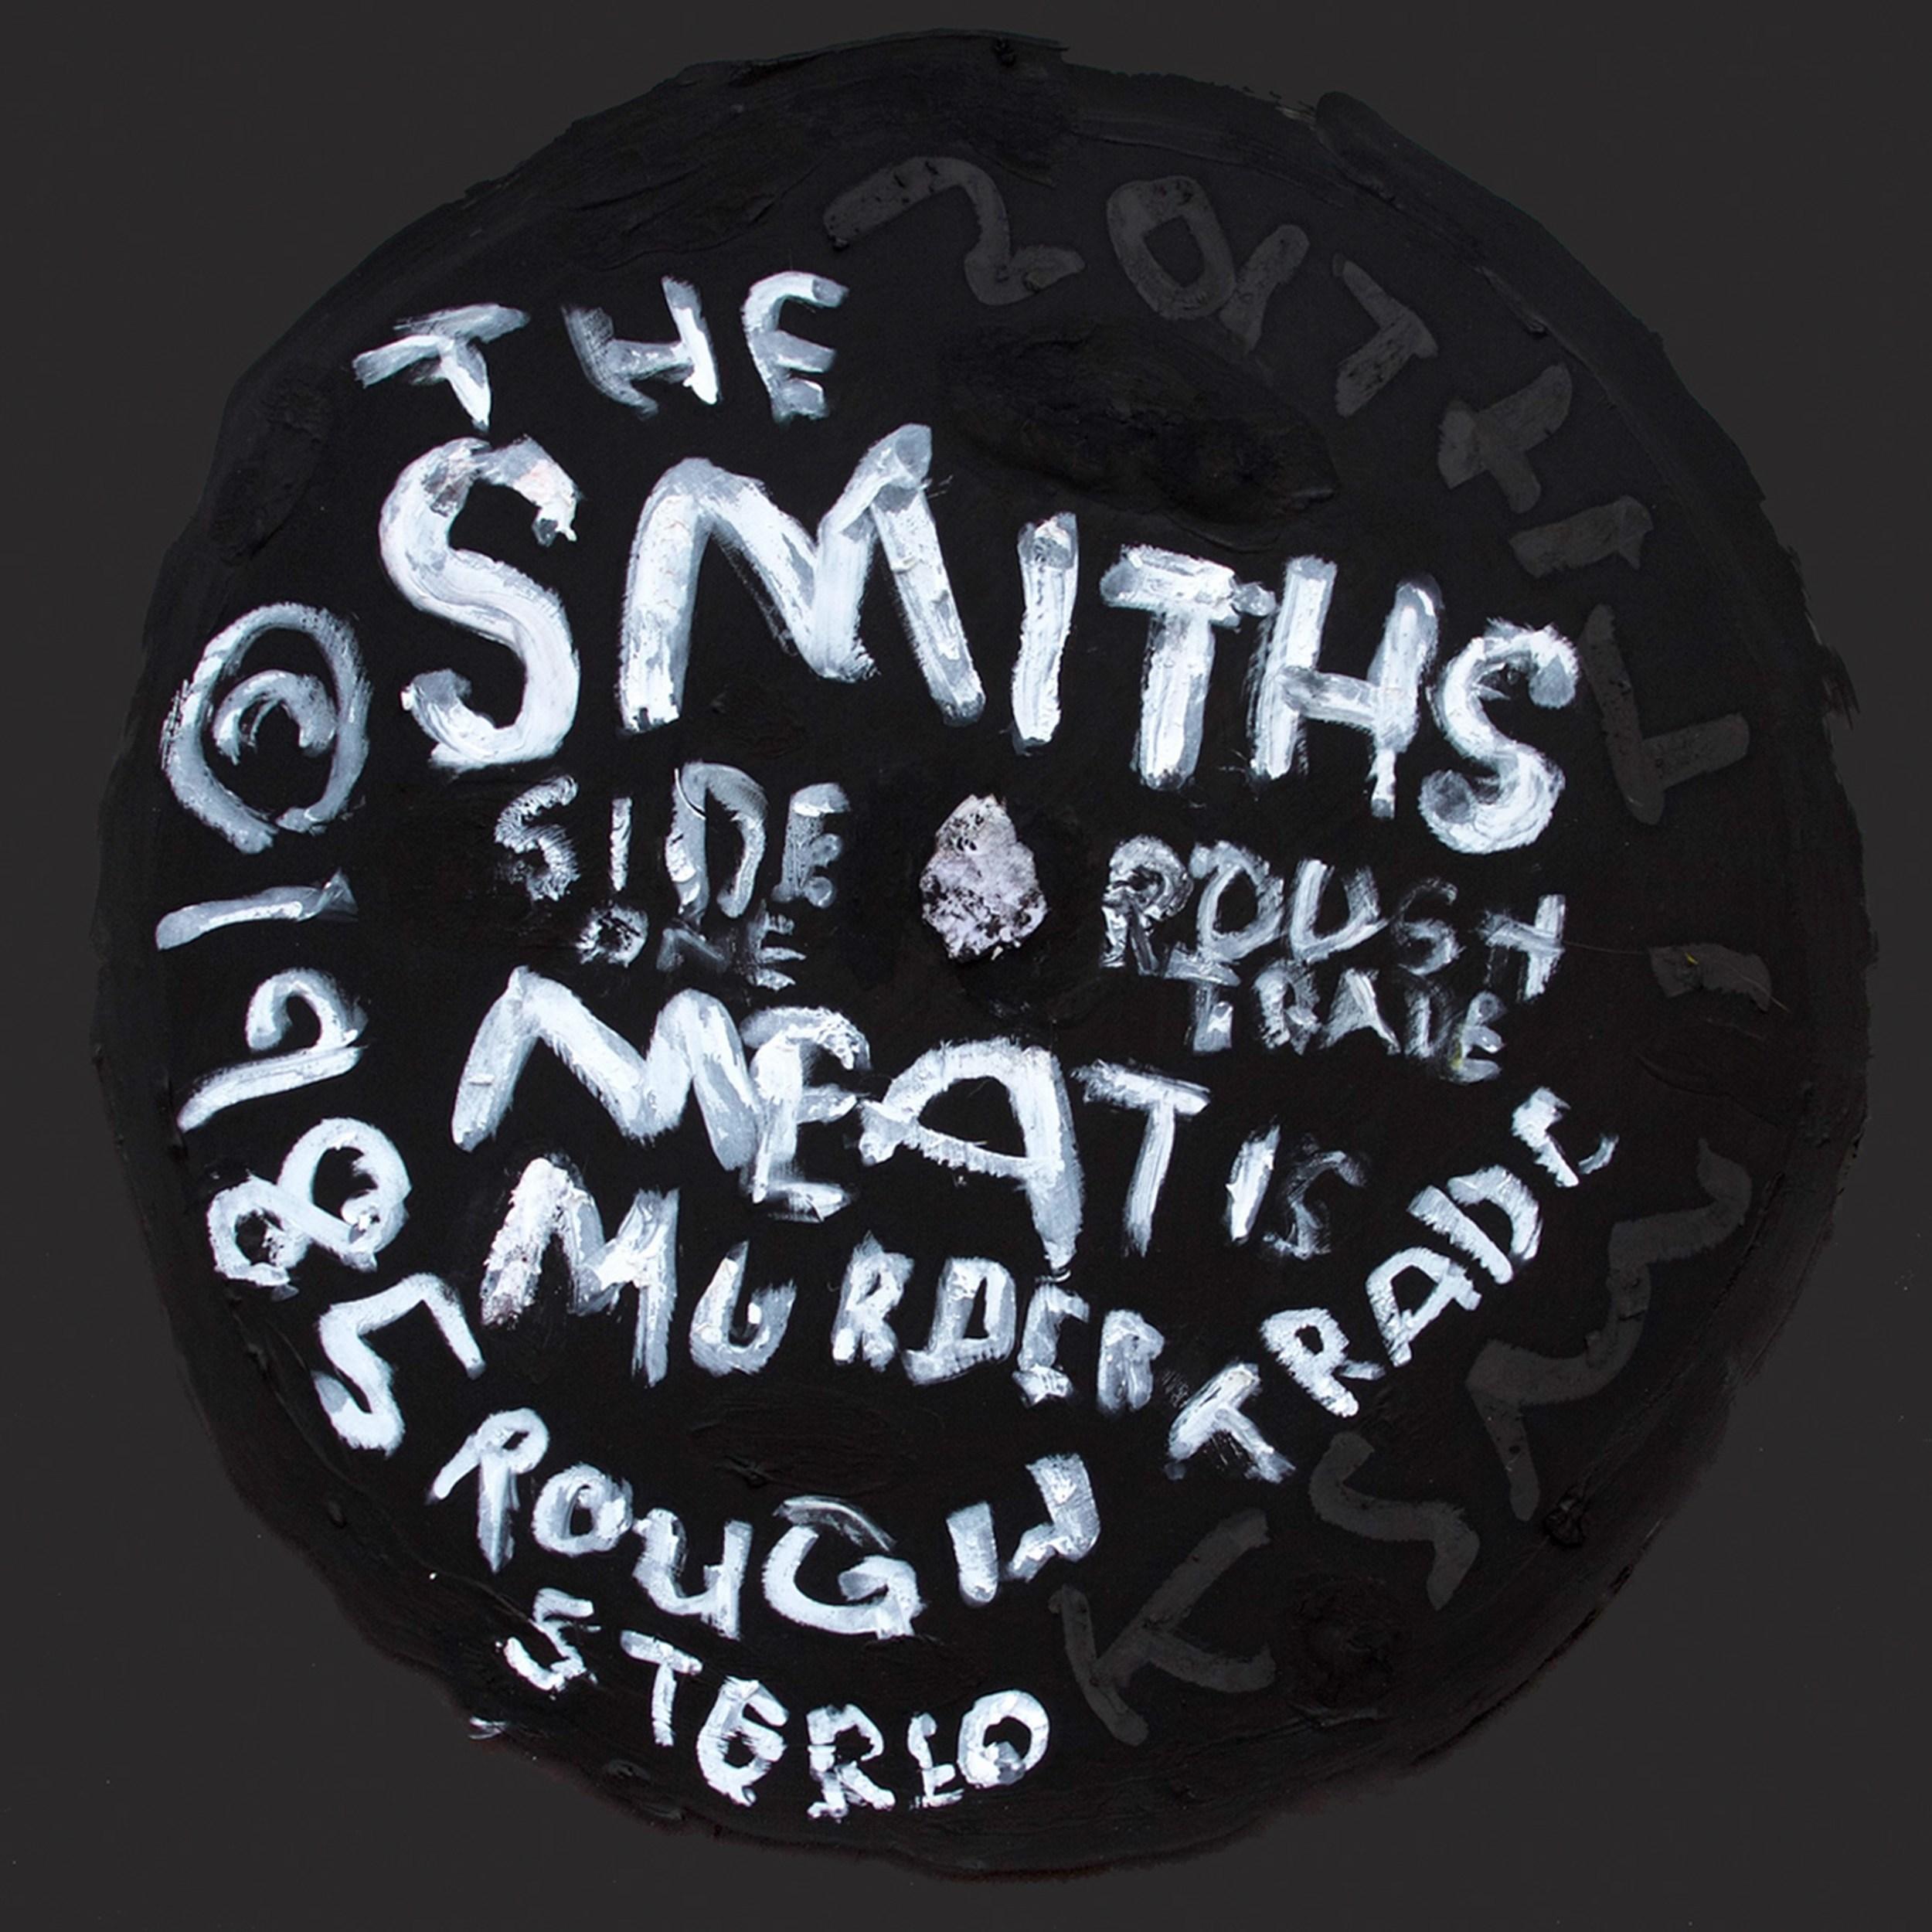 The Smiths - Meat Is Murder (étiquette d'enregistrement, clous de disque, listes de plateaux, Pop Art) 